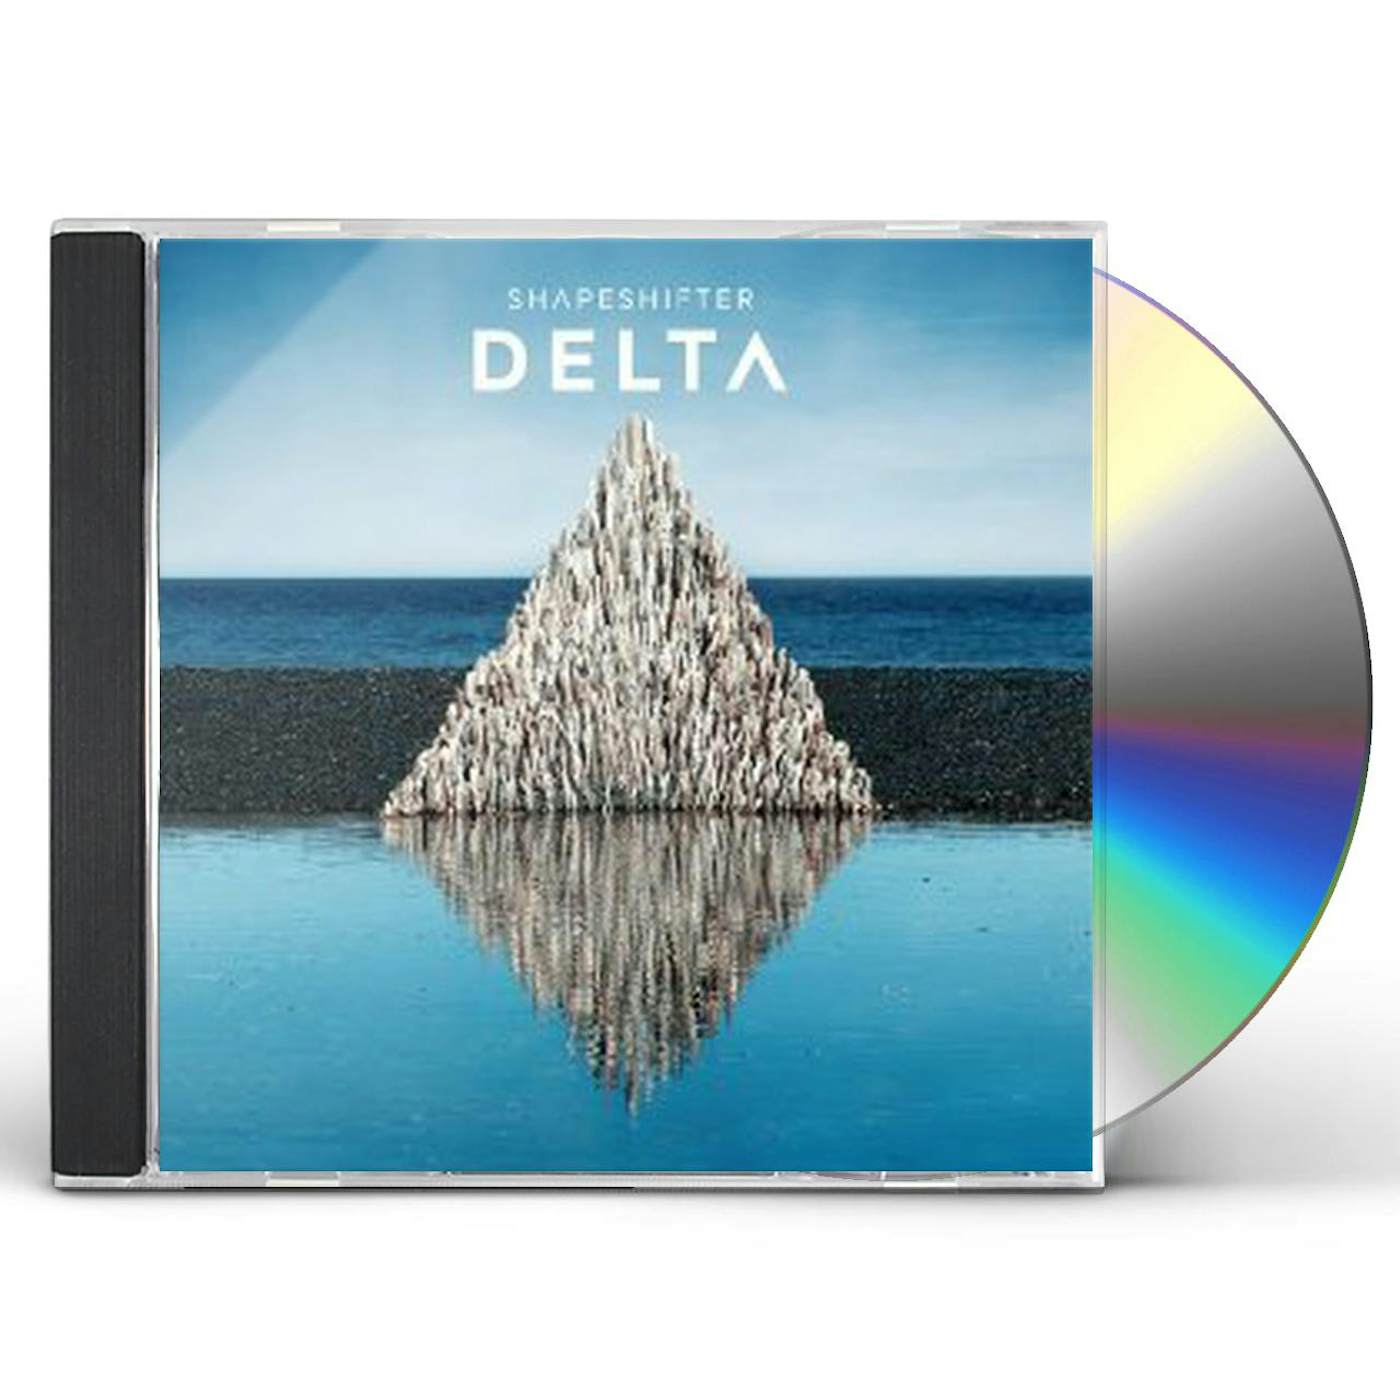 Shapeshifter DELTA CD